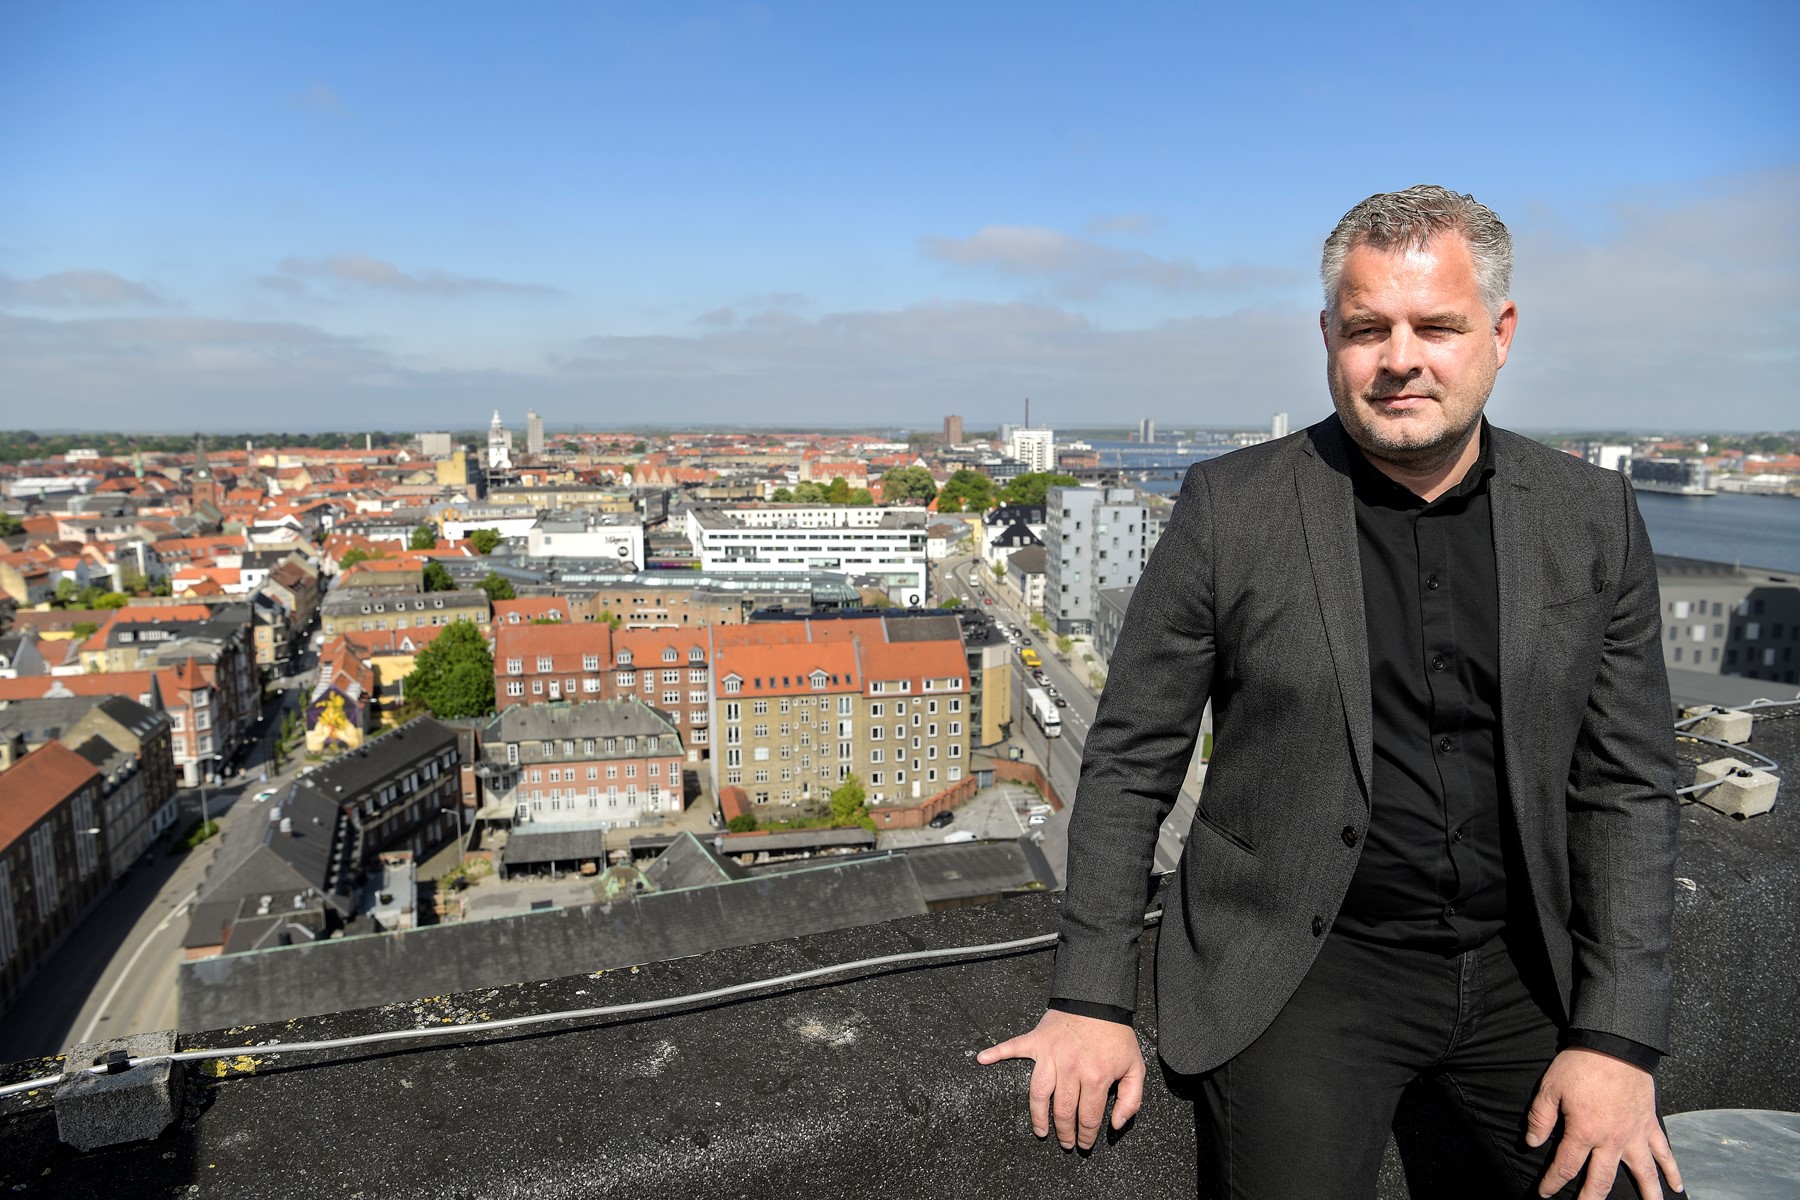 På sit CV kan Tonny Thorup både skrive erhvervsdirektør i BusinessAalborg og afdelingschef i erhvervsafdelingen i Aalborg Kommune. Foto: Claus Søndberg.